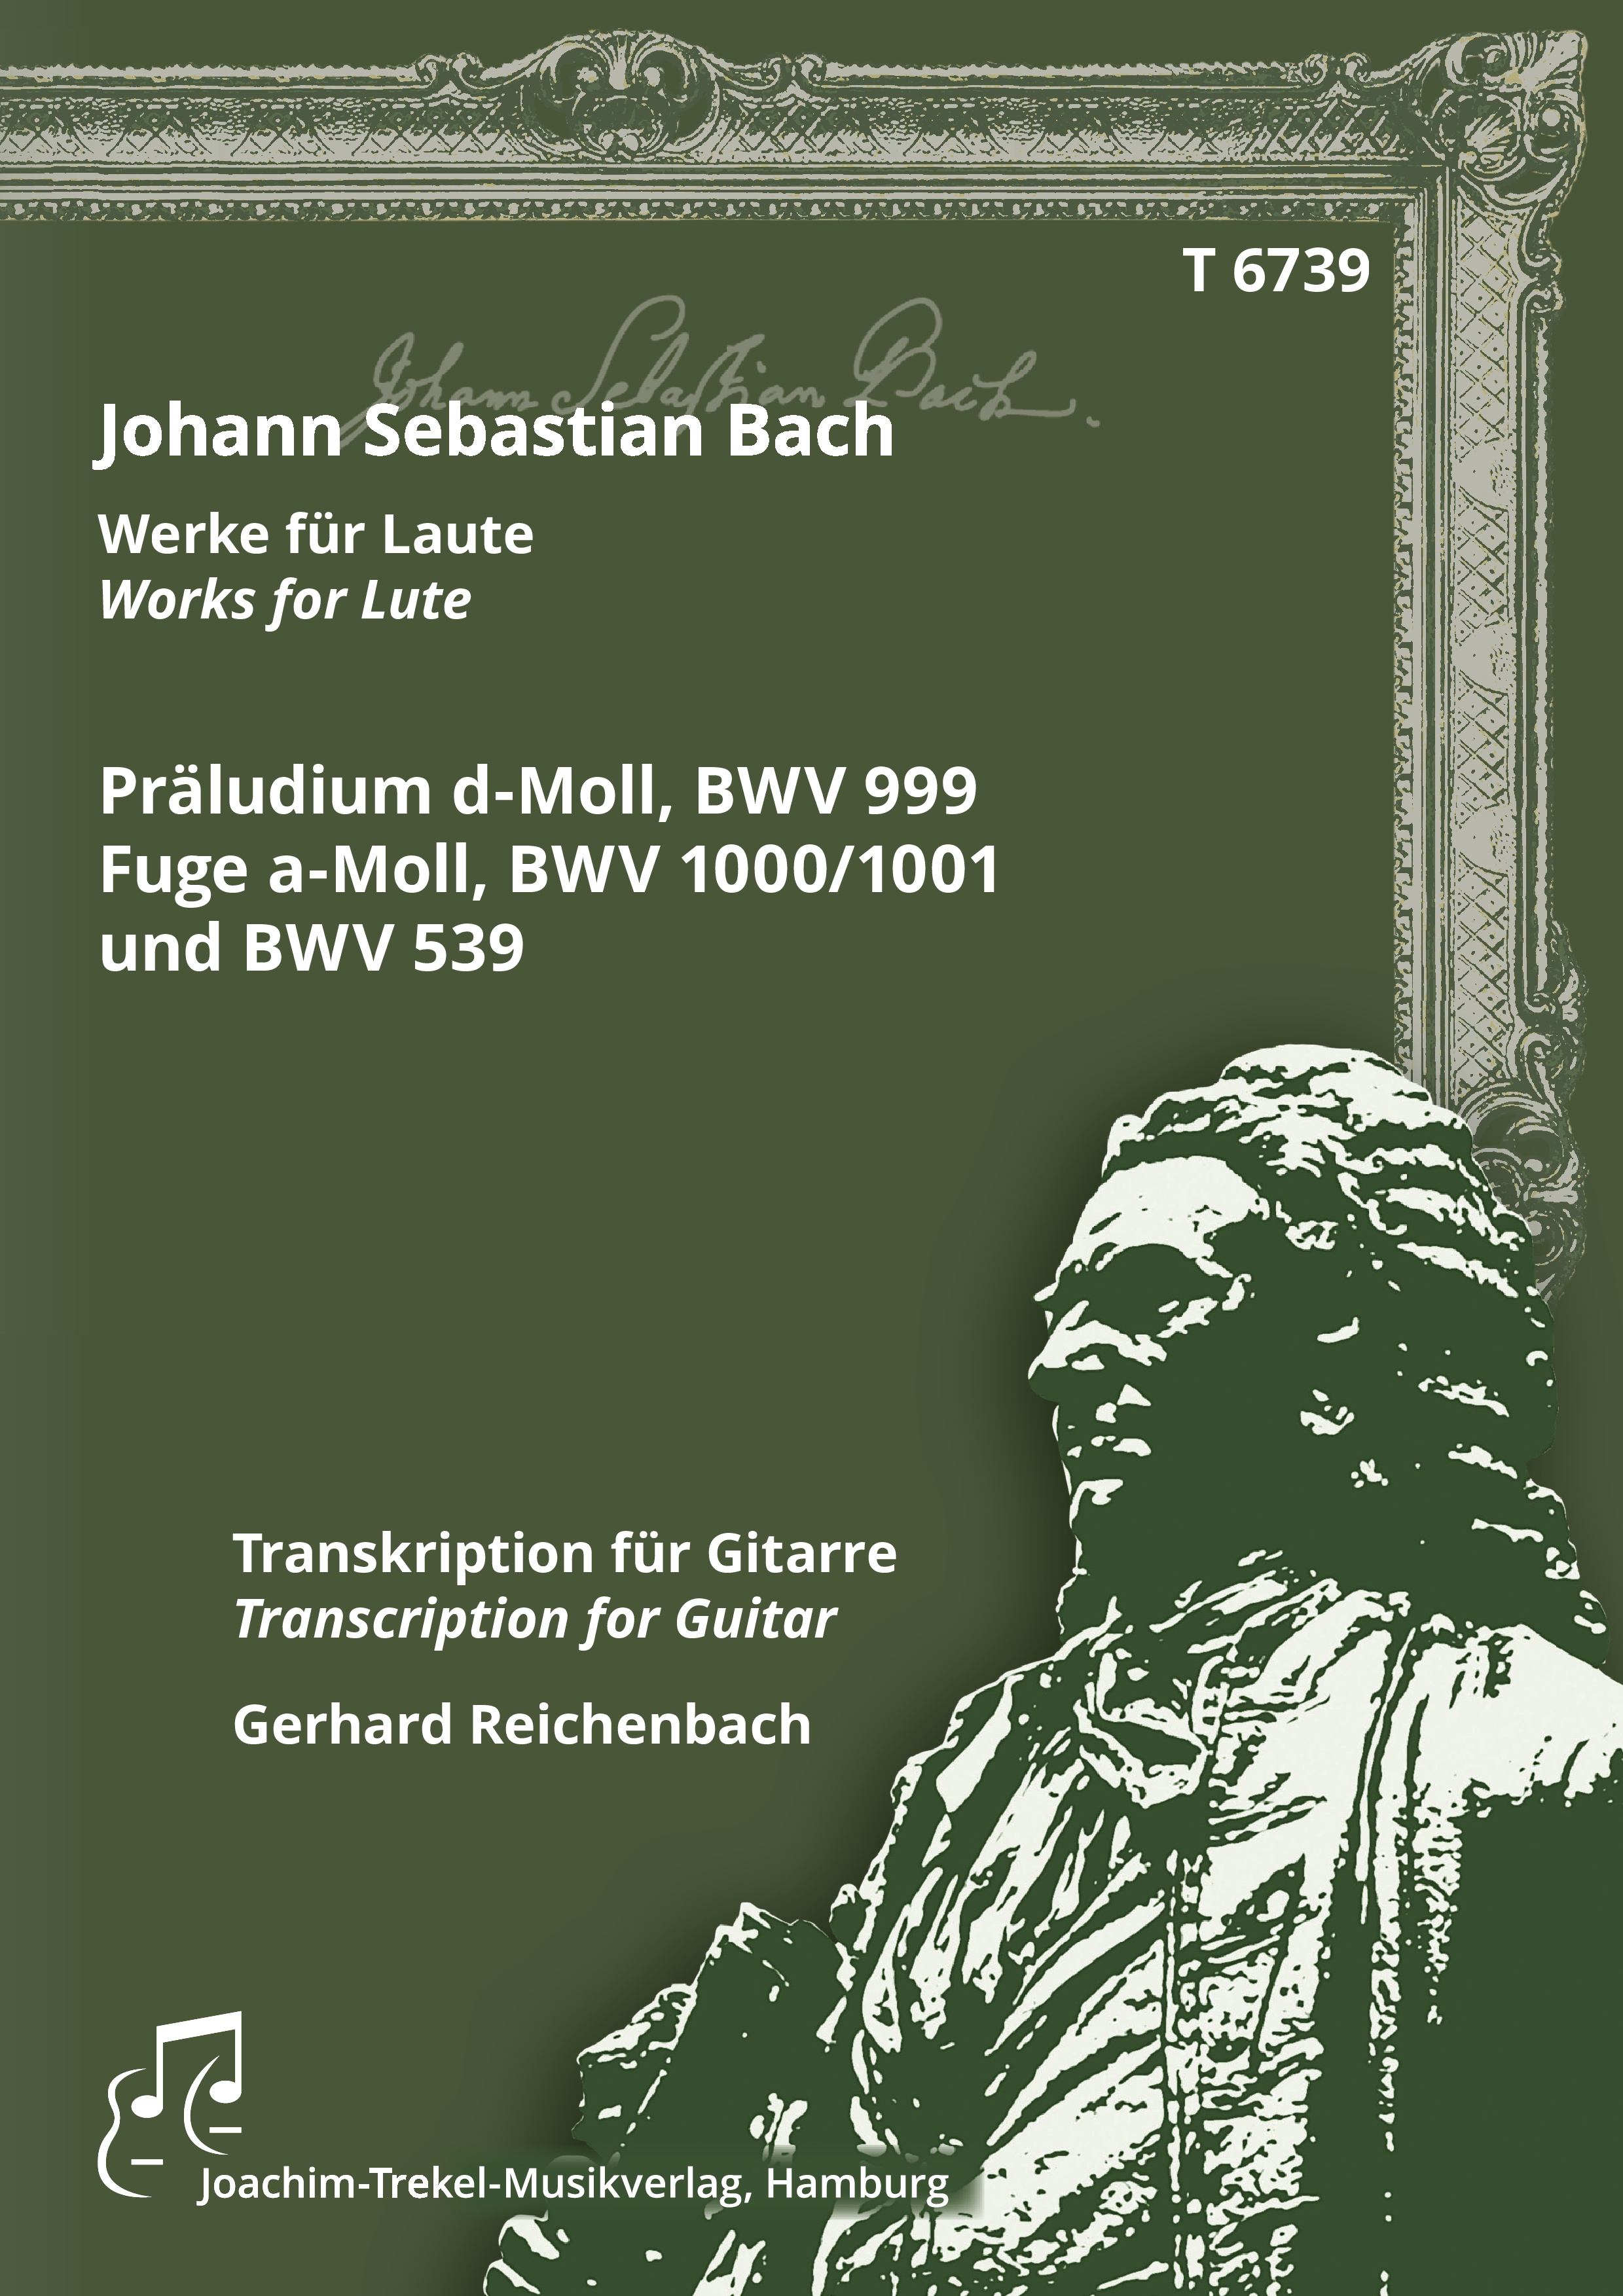 Präludium d-Moll, BWV 999, Fugue a-Moll, BWV 1000/1001 und BWV 539